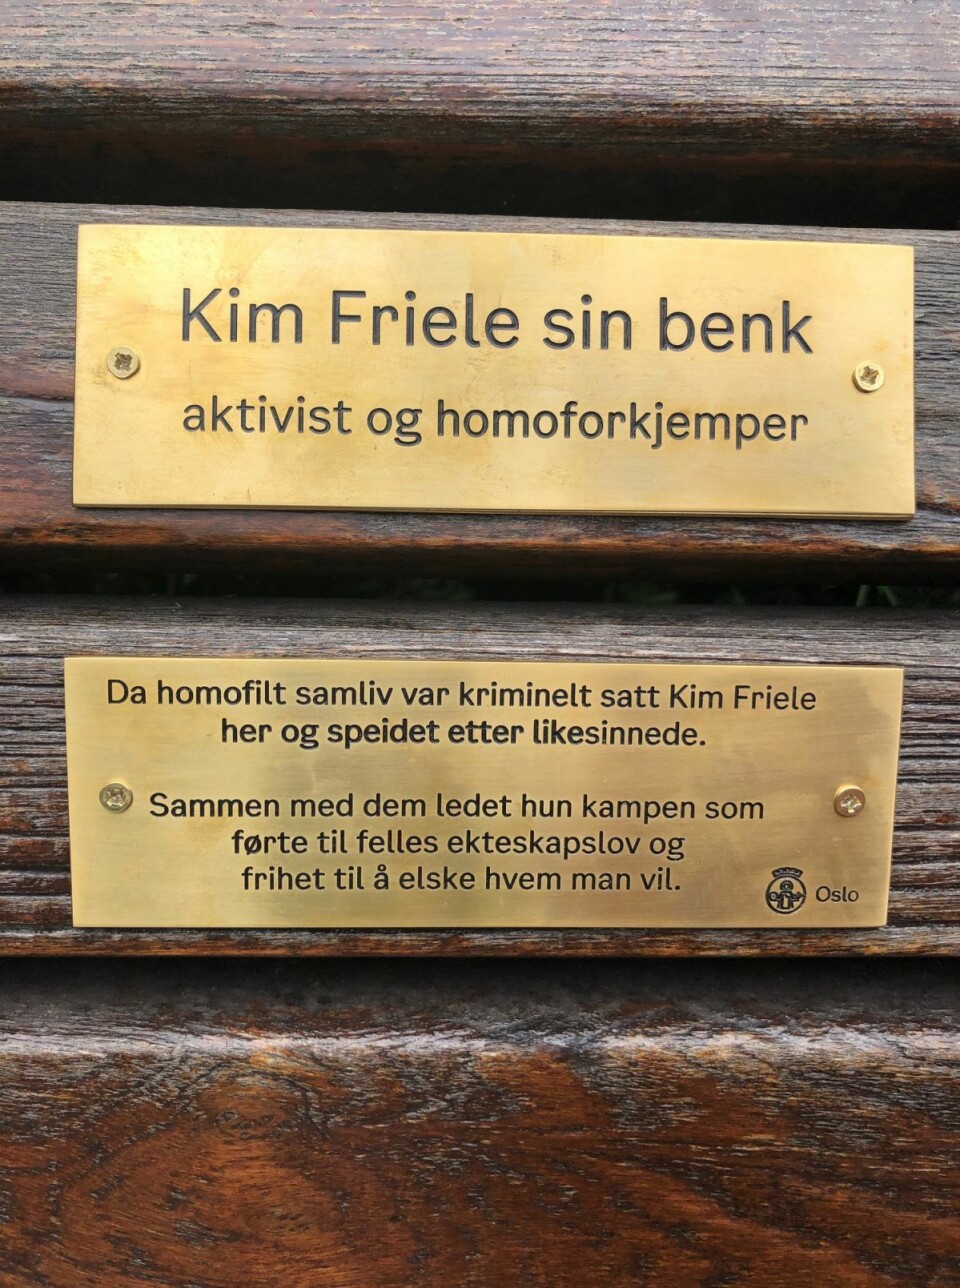 Den gamle sitteplassen står nå sentral i historien om retten til likekjønnet kjærlighet. Foto: Per Anders Torvik Langerød